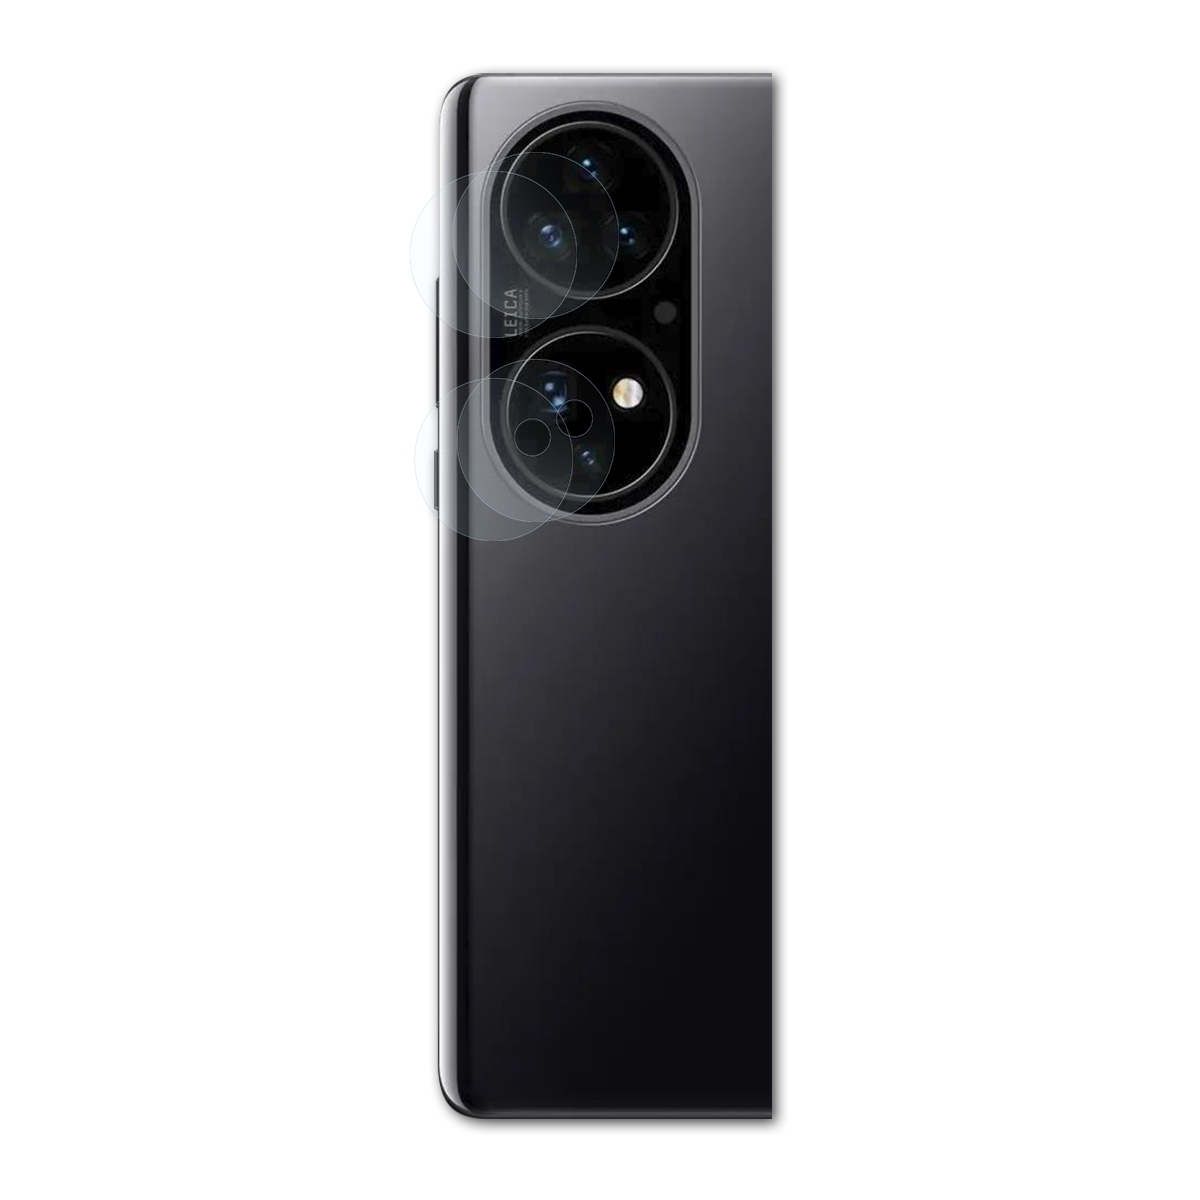 BRUNI 2x Basics-Clear Schutzfolie(für Lens) Huawei P50